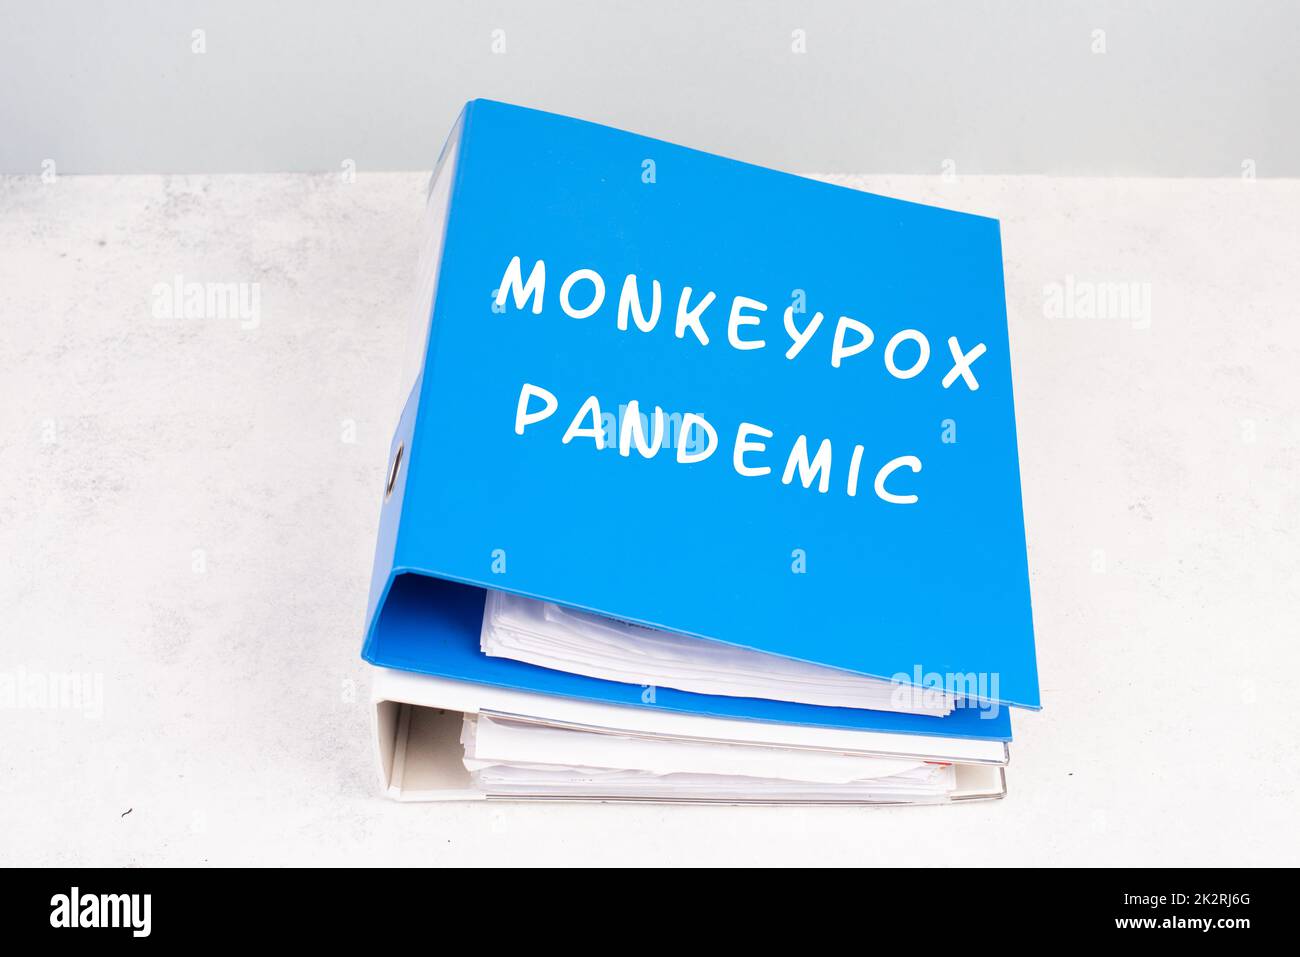 Die Worte monkeypox pandemic stehen in deutscher Sprache auf einem Ordner, Ausbruch des MPXV-Virus, Infektionskrankheit, die sich ausbreitet Stockfoto